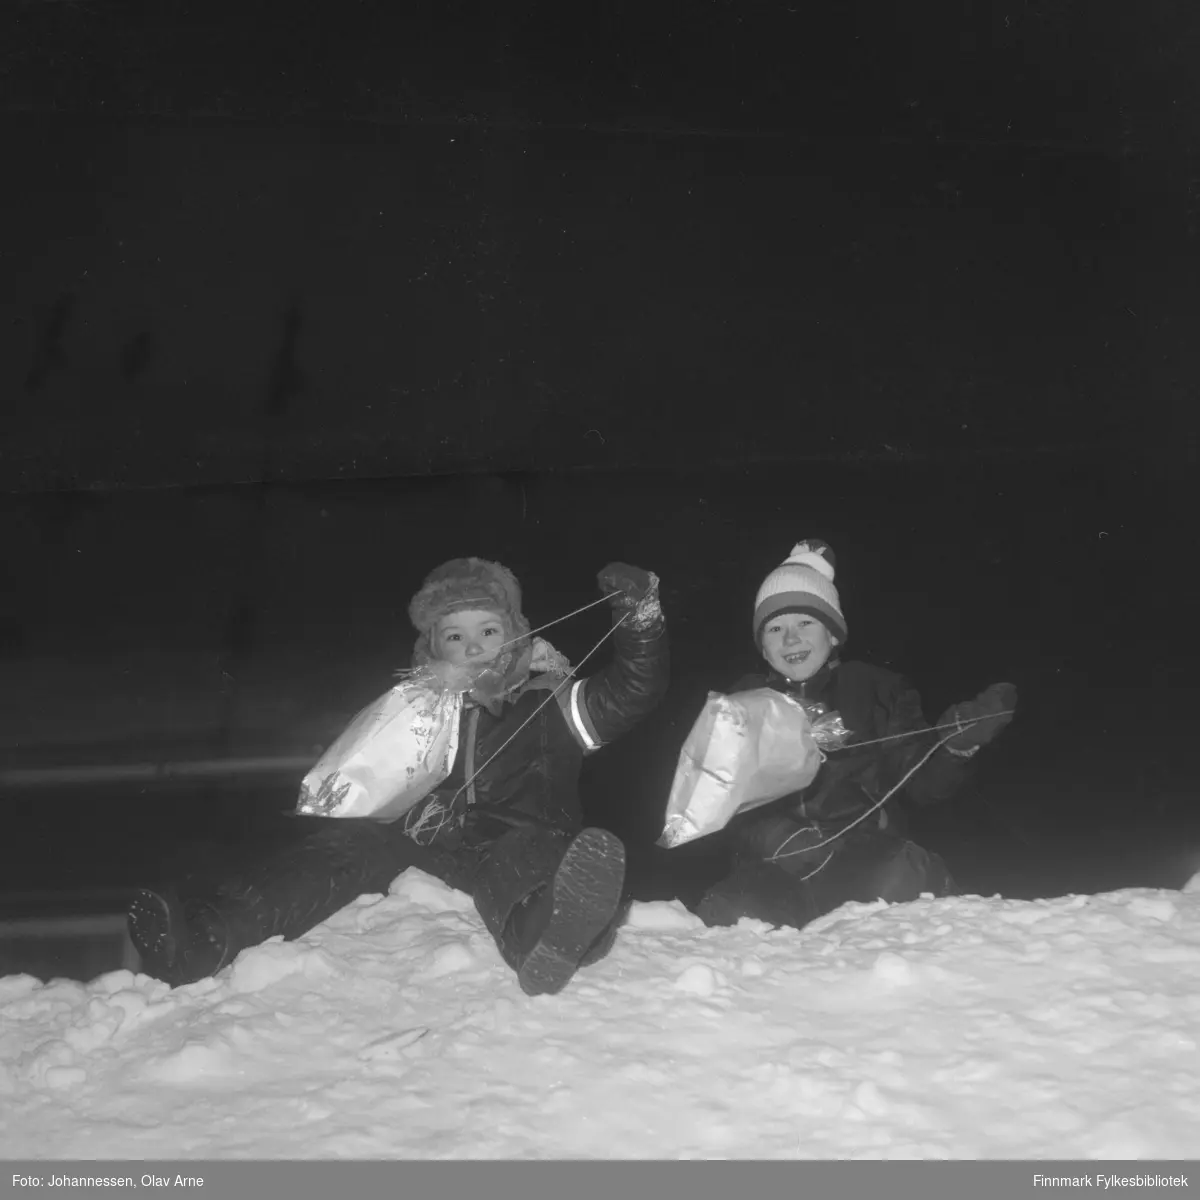 Ukjente barn leker i snø

Foto trolig tatt på tidlig 1970-tallet, Båtsfjord (Finnmark)